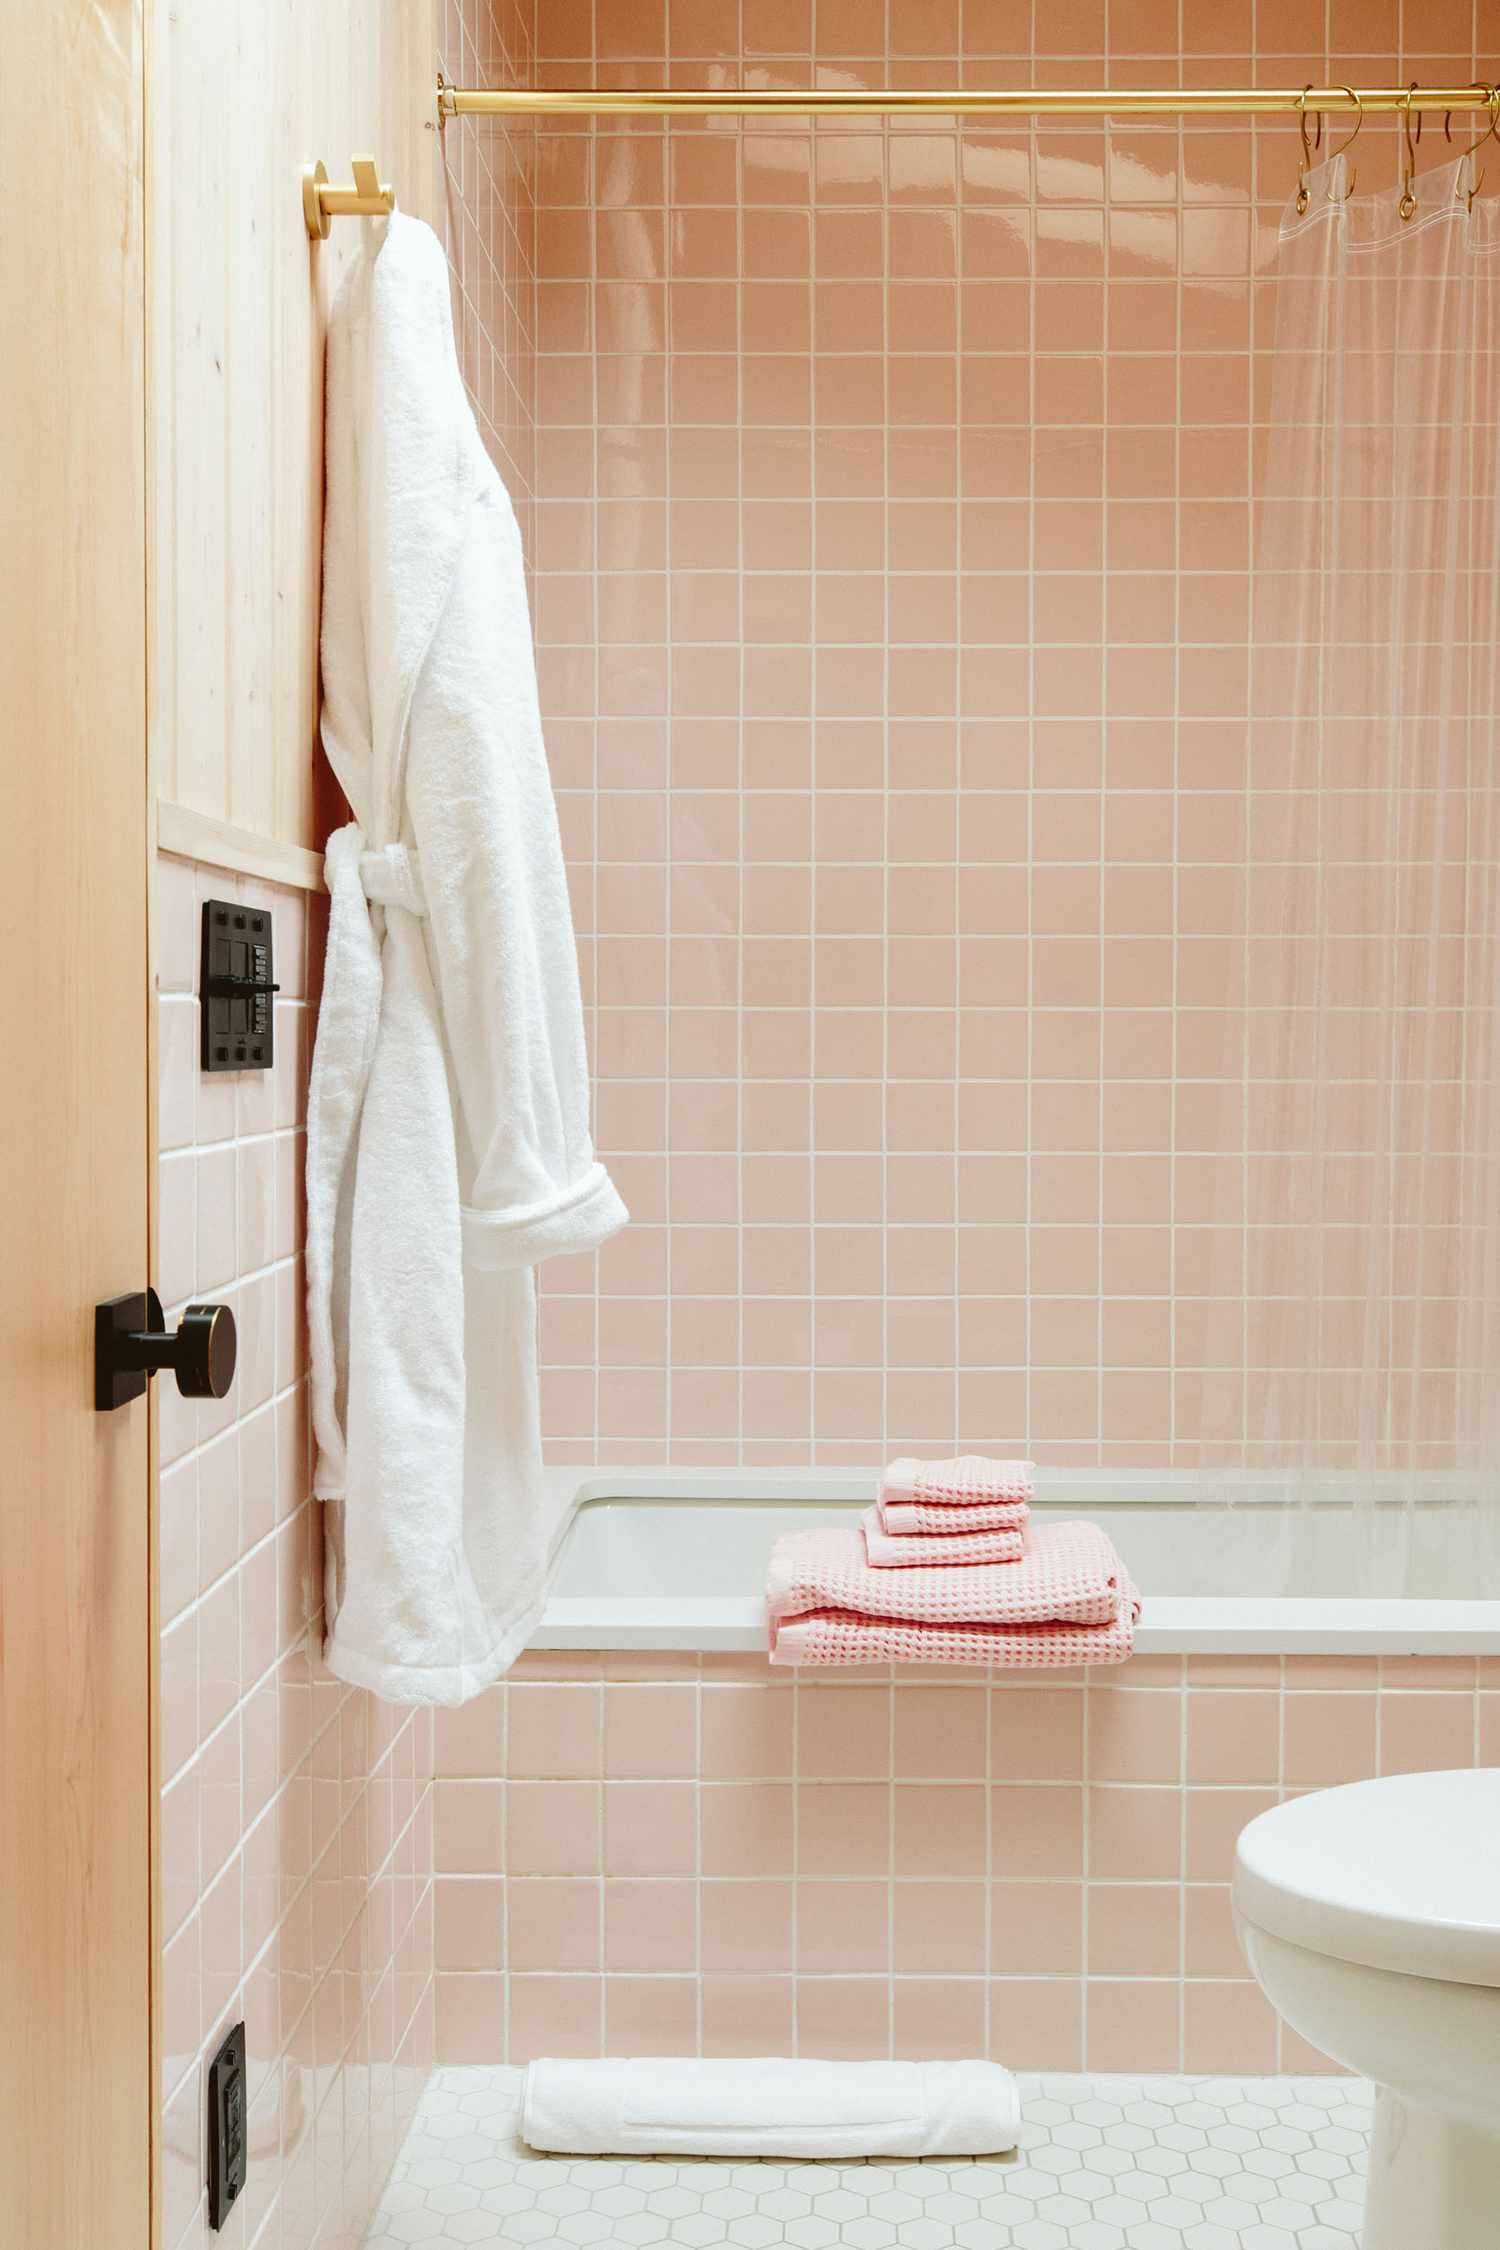 Une salle de bain rose pâle est autorisée à briller avec un rideau clair montrant le carrelage rose